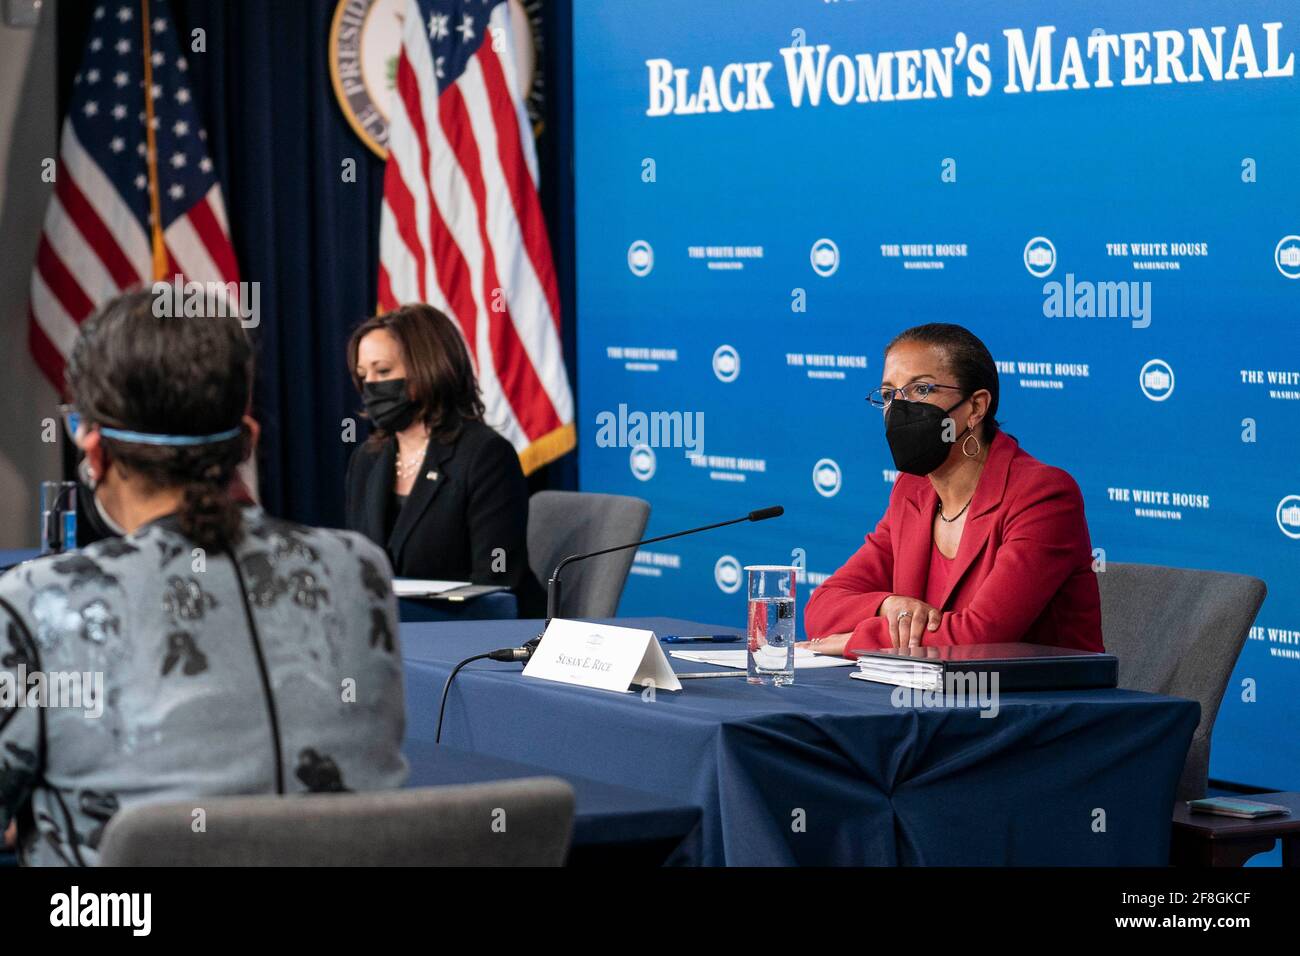 Susan Rice, Asesora de Política Doméstica de la Casa Blanca, escucha durante una mesa redonda sobre la salud materna de los negros, organizada por la Vicepresidenta Kamala Harris en el Auditorio de la Corte del Sur en Washington, D.C., EE.UU., el martes 13 de abril, 2021. Crédito: Sarah Silbiger / Pool via CNP /MediaPunch Foto de stock